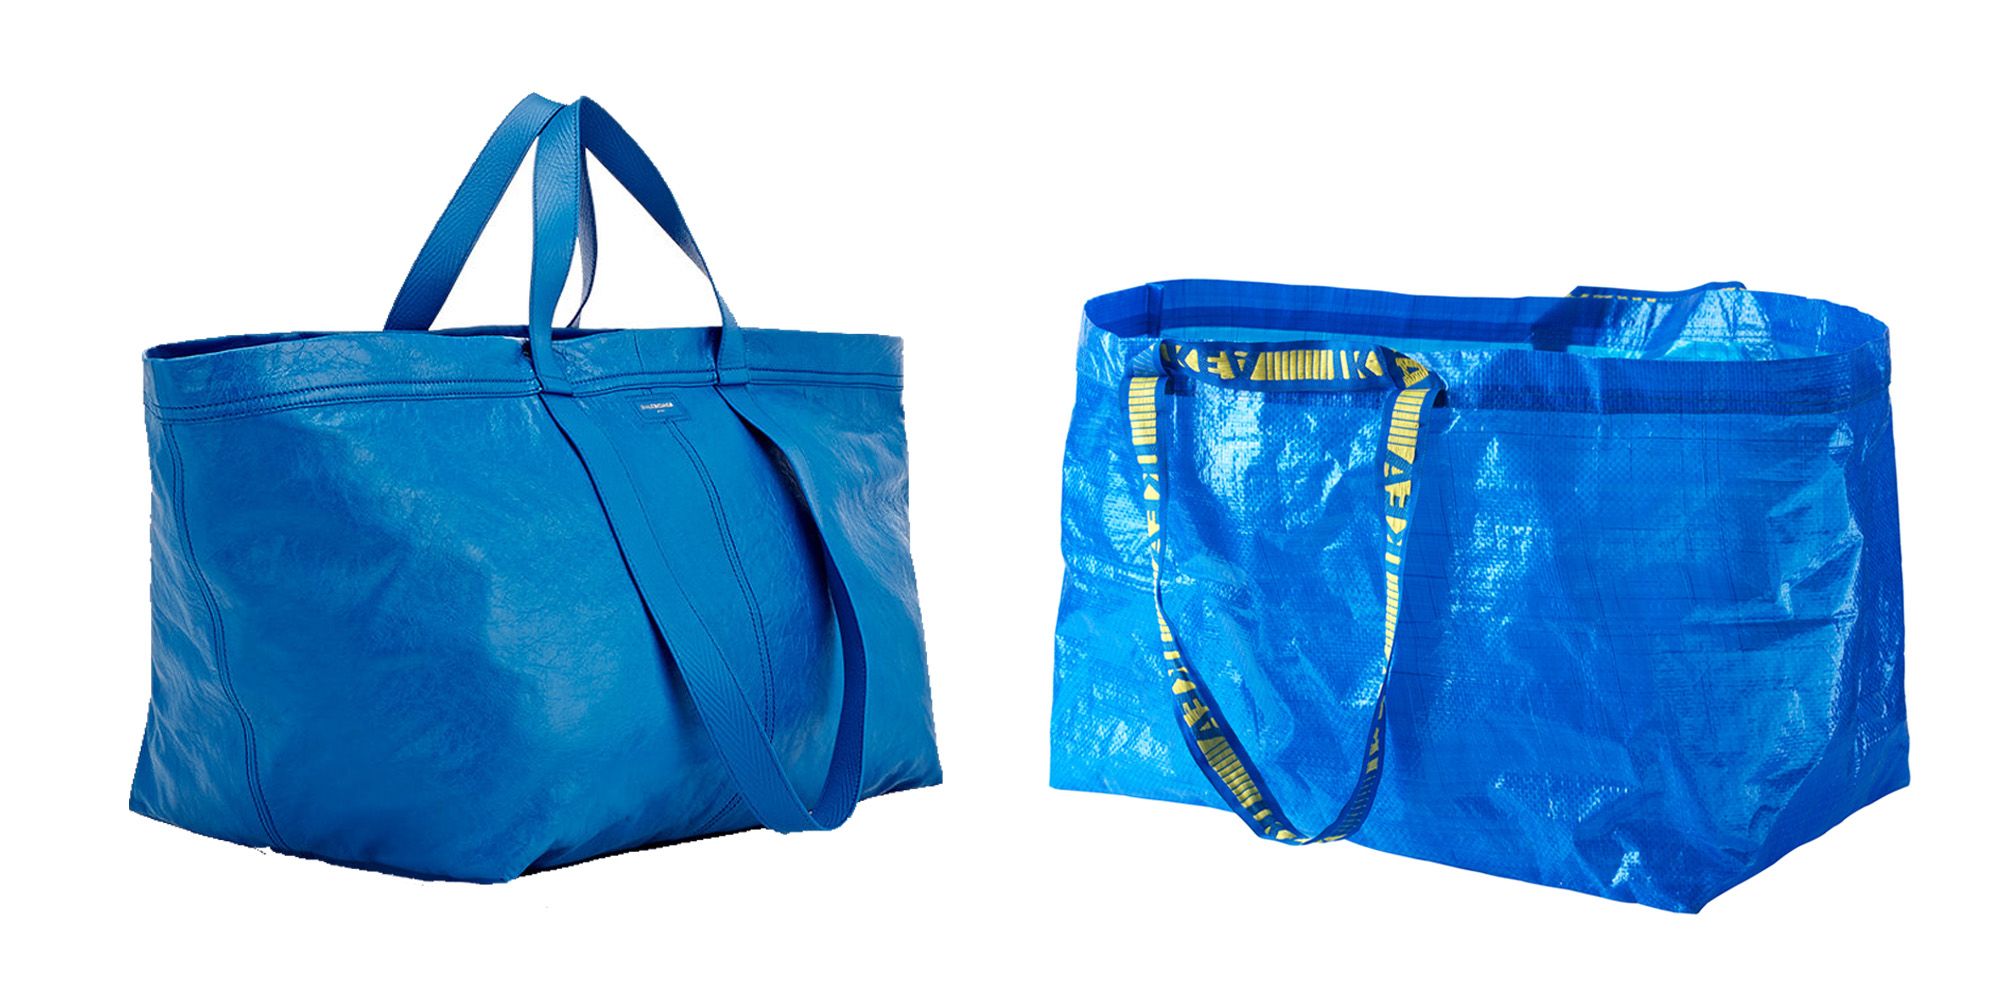 Balenciaga Bag Chanels IKEA's Tote - IKEA Bags